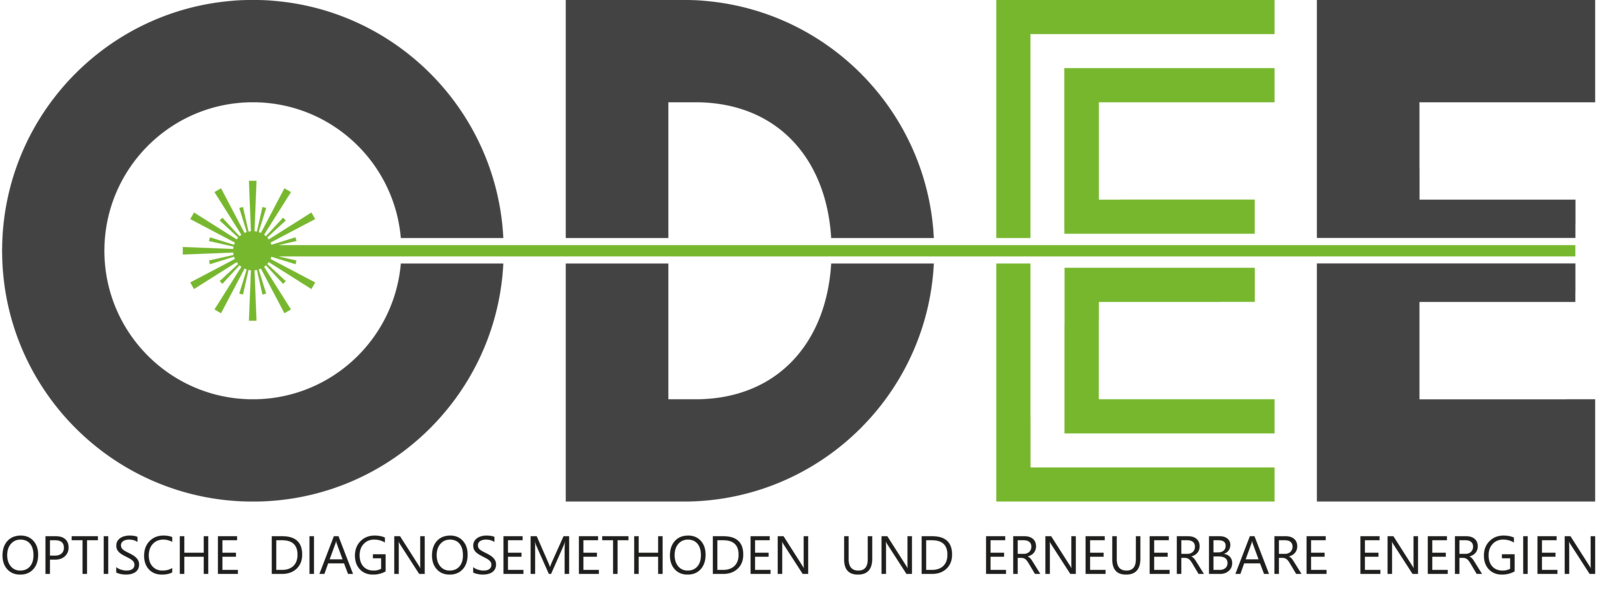 Logo ODEE - Optische Diagnosemethoden und Erneuerbare Energien